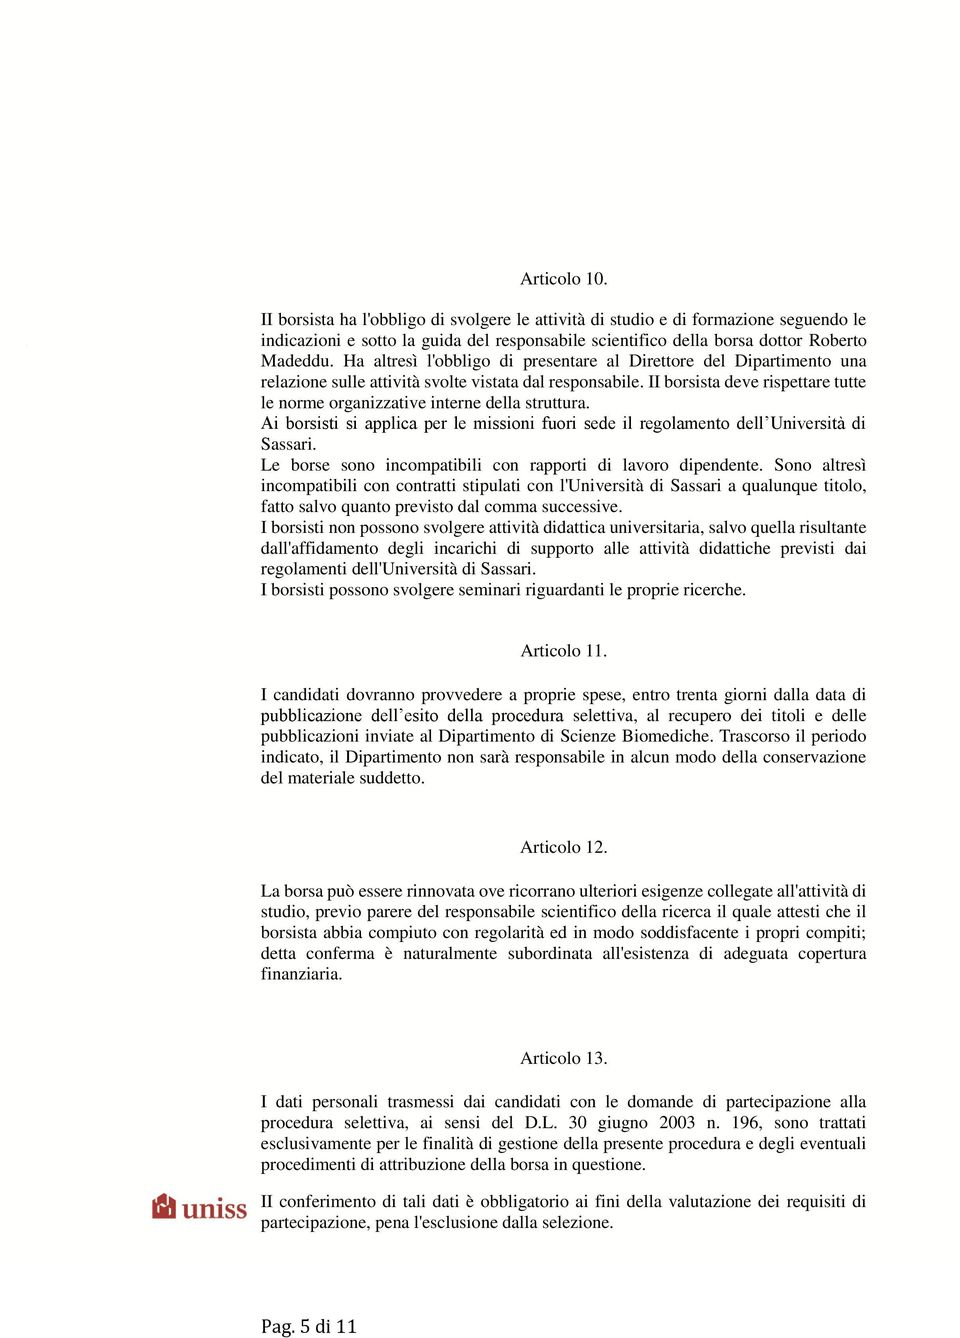 II borsista deve rispettare tutte le norme organizzative interne della struttura. Ai borsisti si applica per le missioni fuori sede il regolamento dell Università di Sassari.